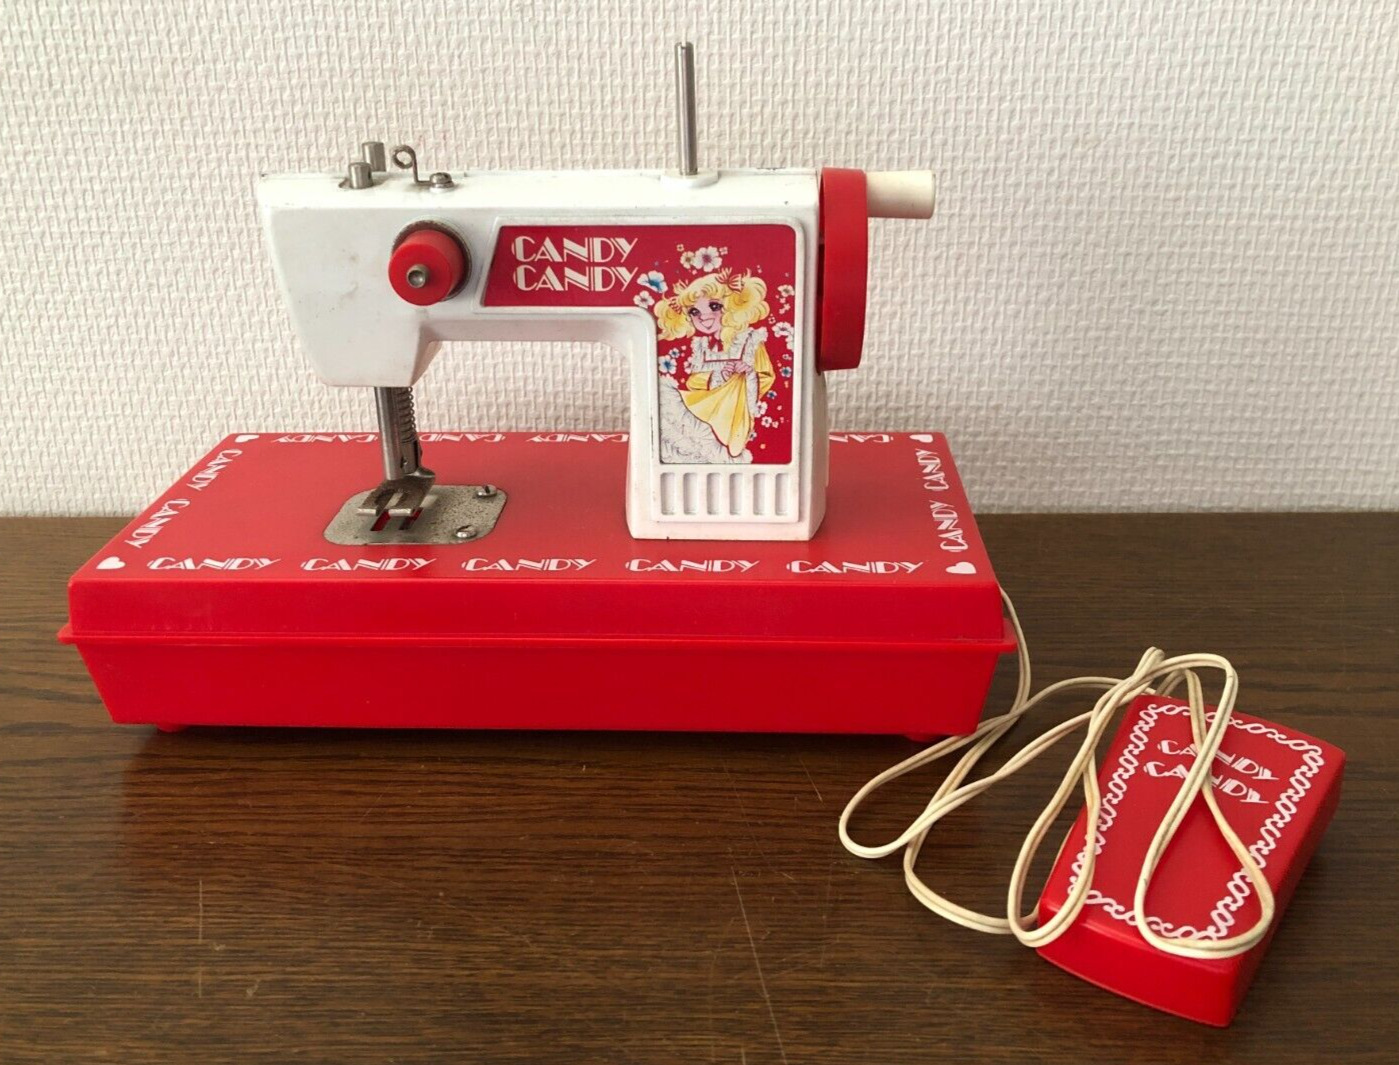 Candy Candy Yumiko Igarashi sewing machine Showa retro vintage 1970s Japan Used